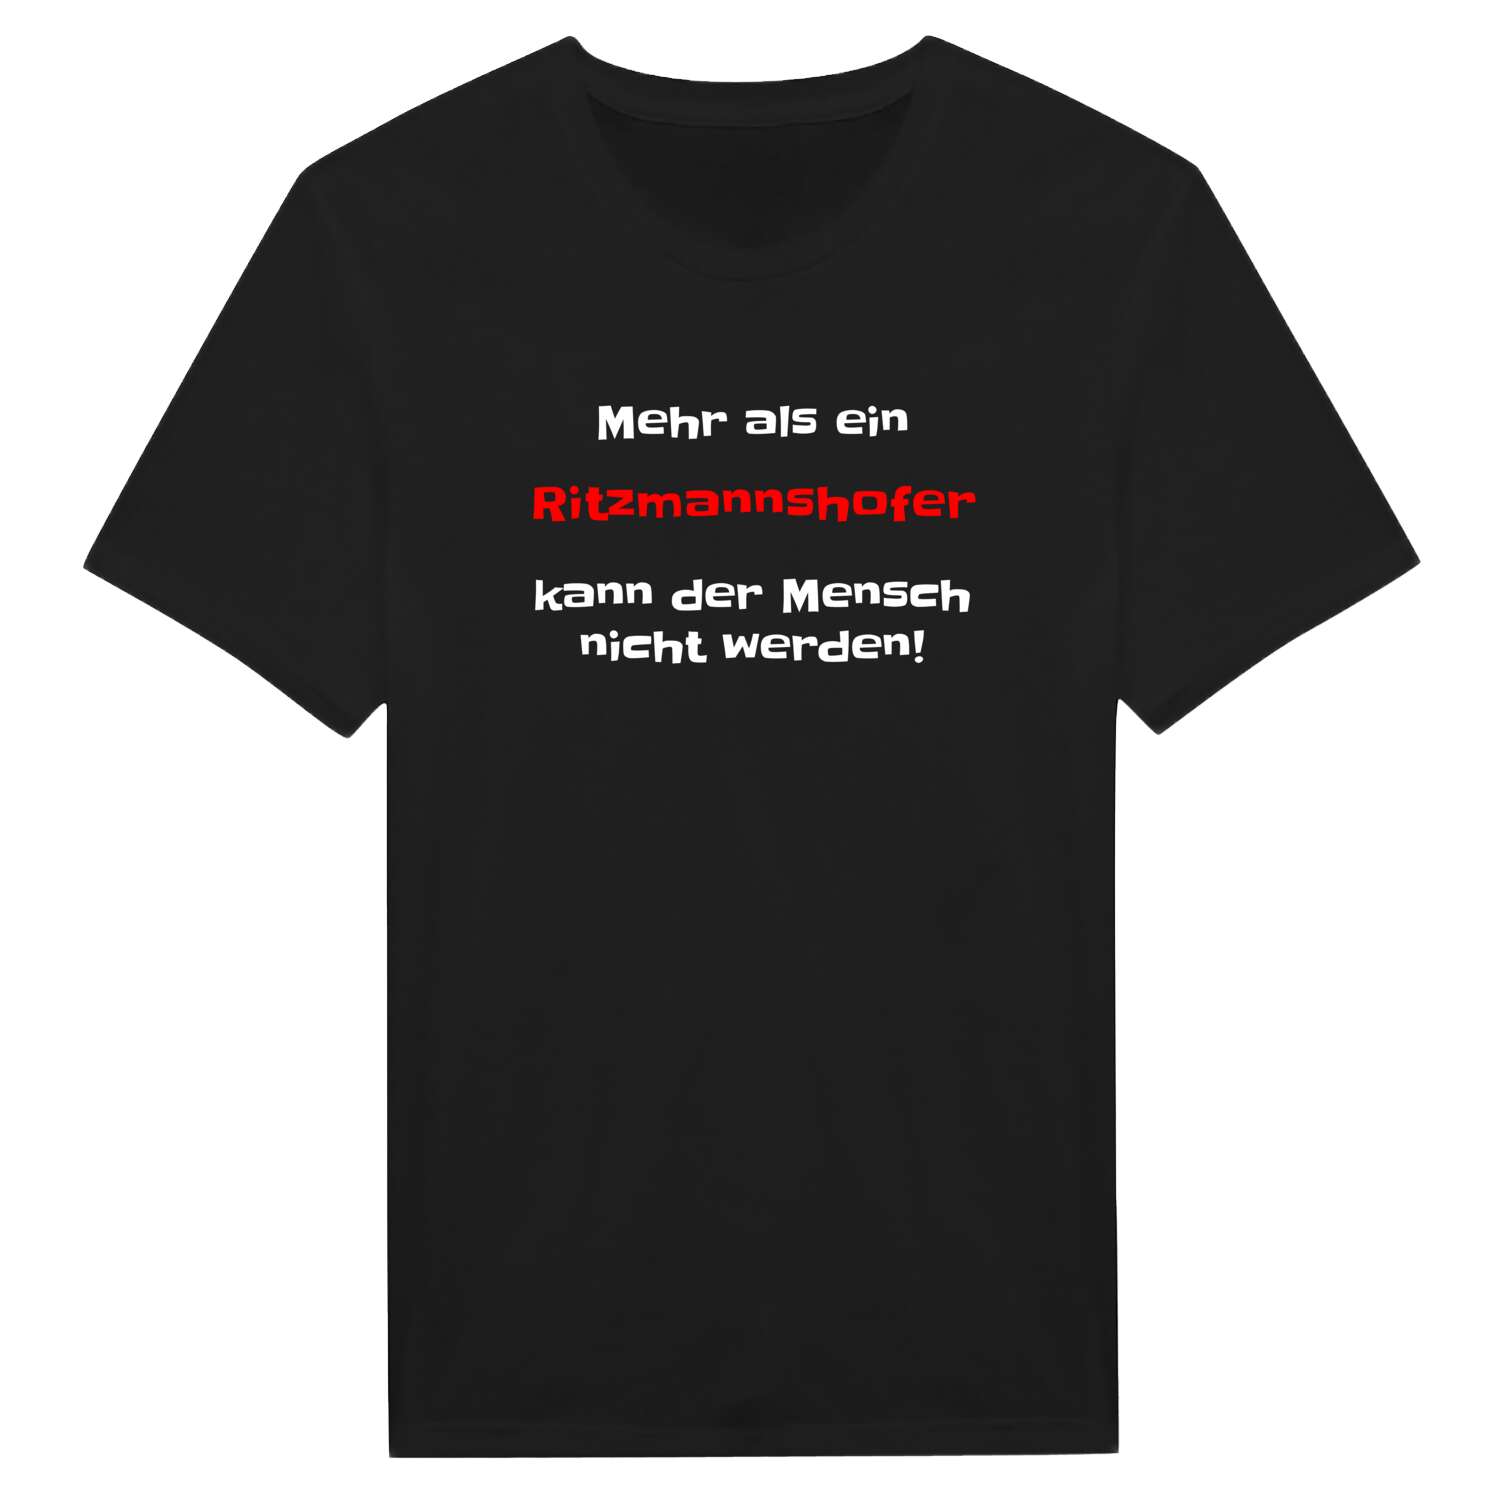 Ritzmannshof T-Shirt »Mehr als ein«